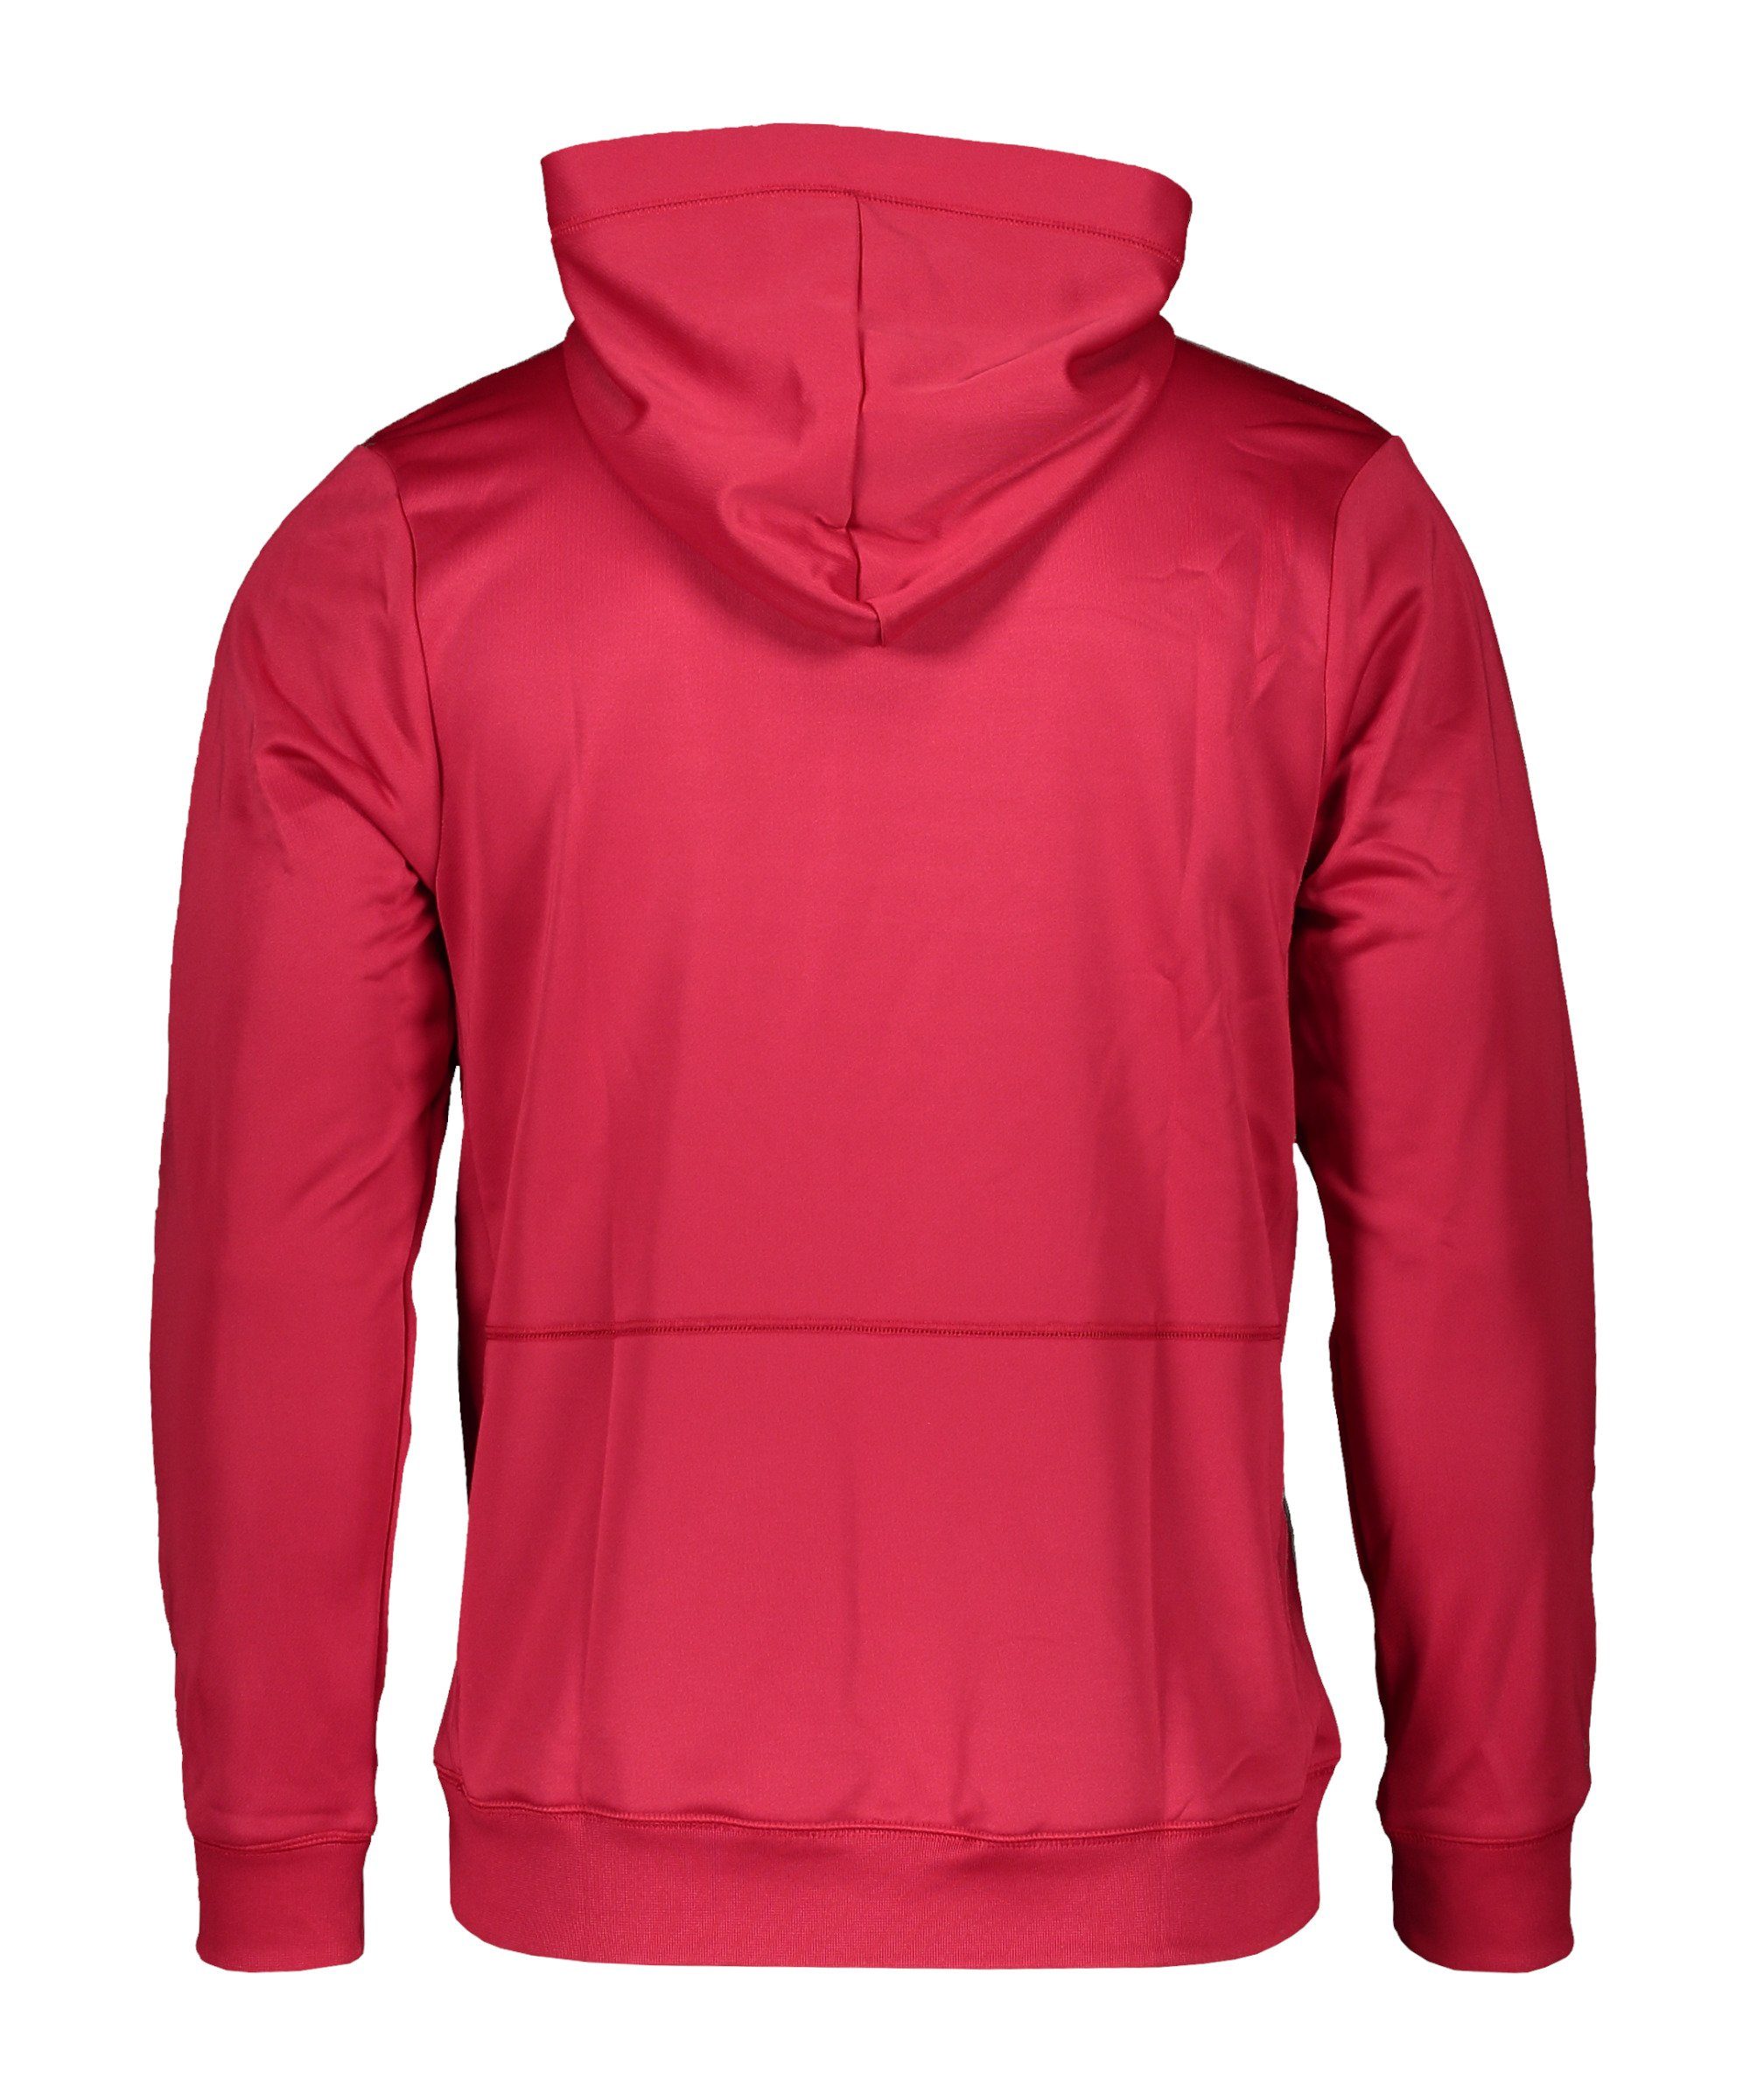 F.C. Nike Sweatshirt pinkschwarzweiss Hoody Fleece Sportswear